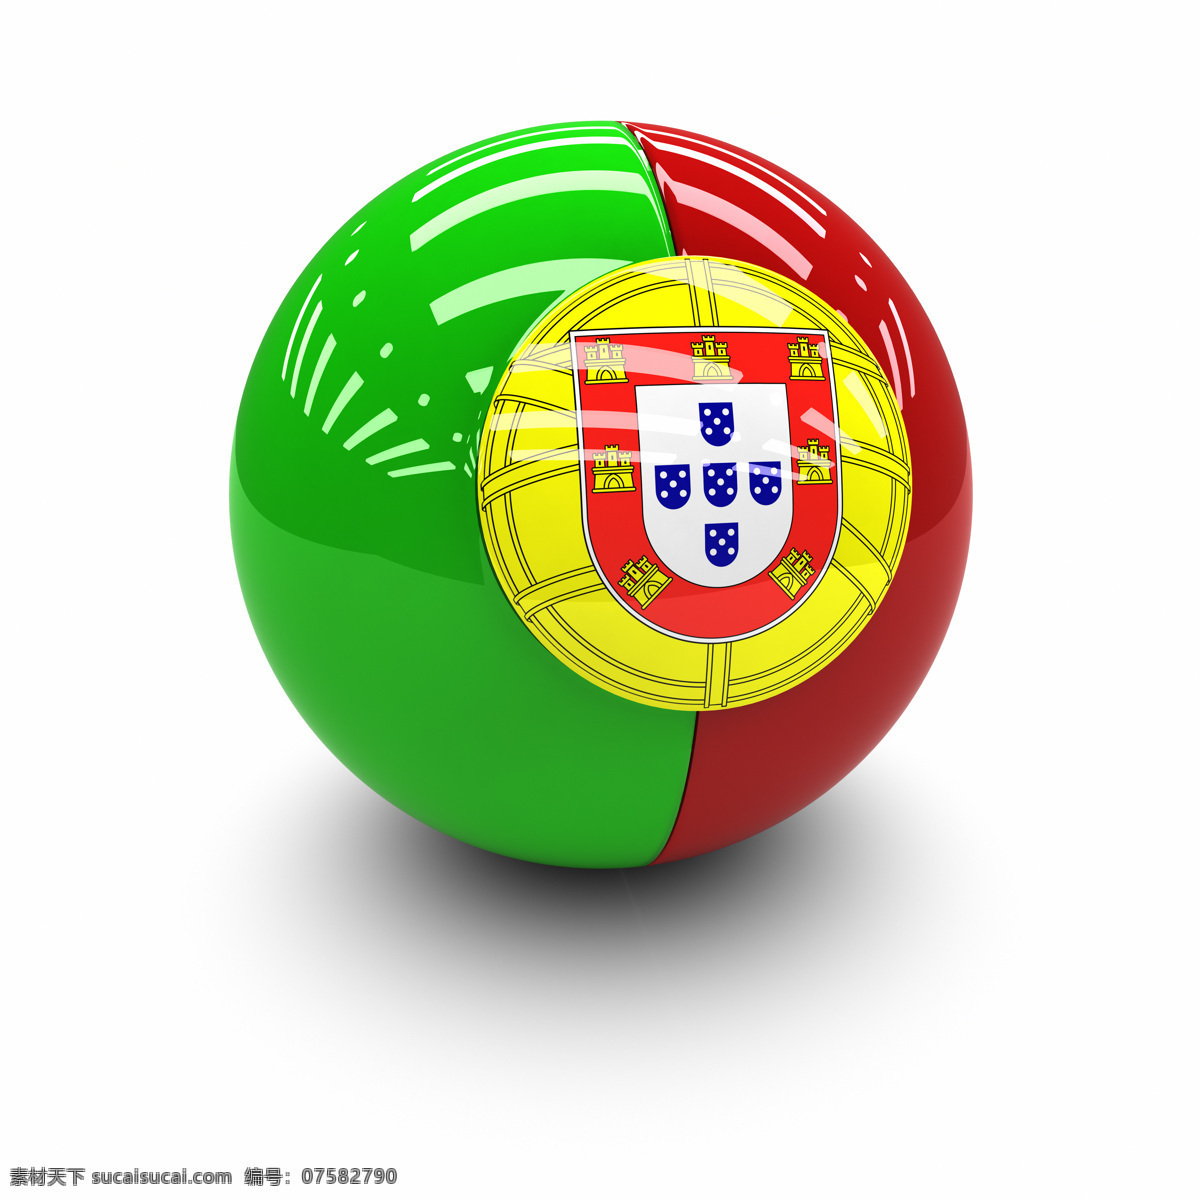 葡萄牙 国旗 球体 葡萄牙国旗 国旗球体 3d国旗 3d球体 国旗图片 生活百科